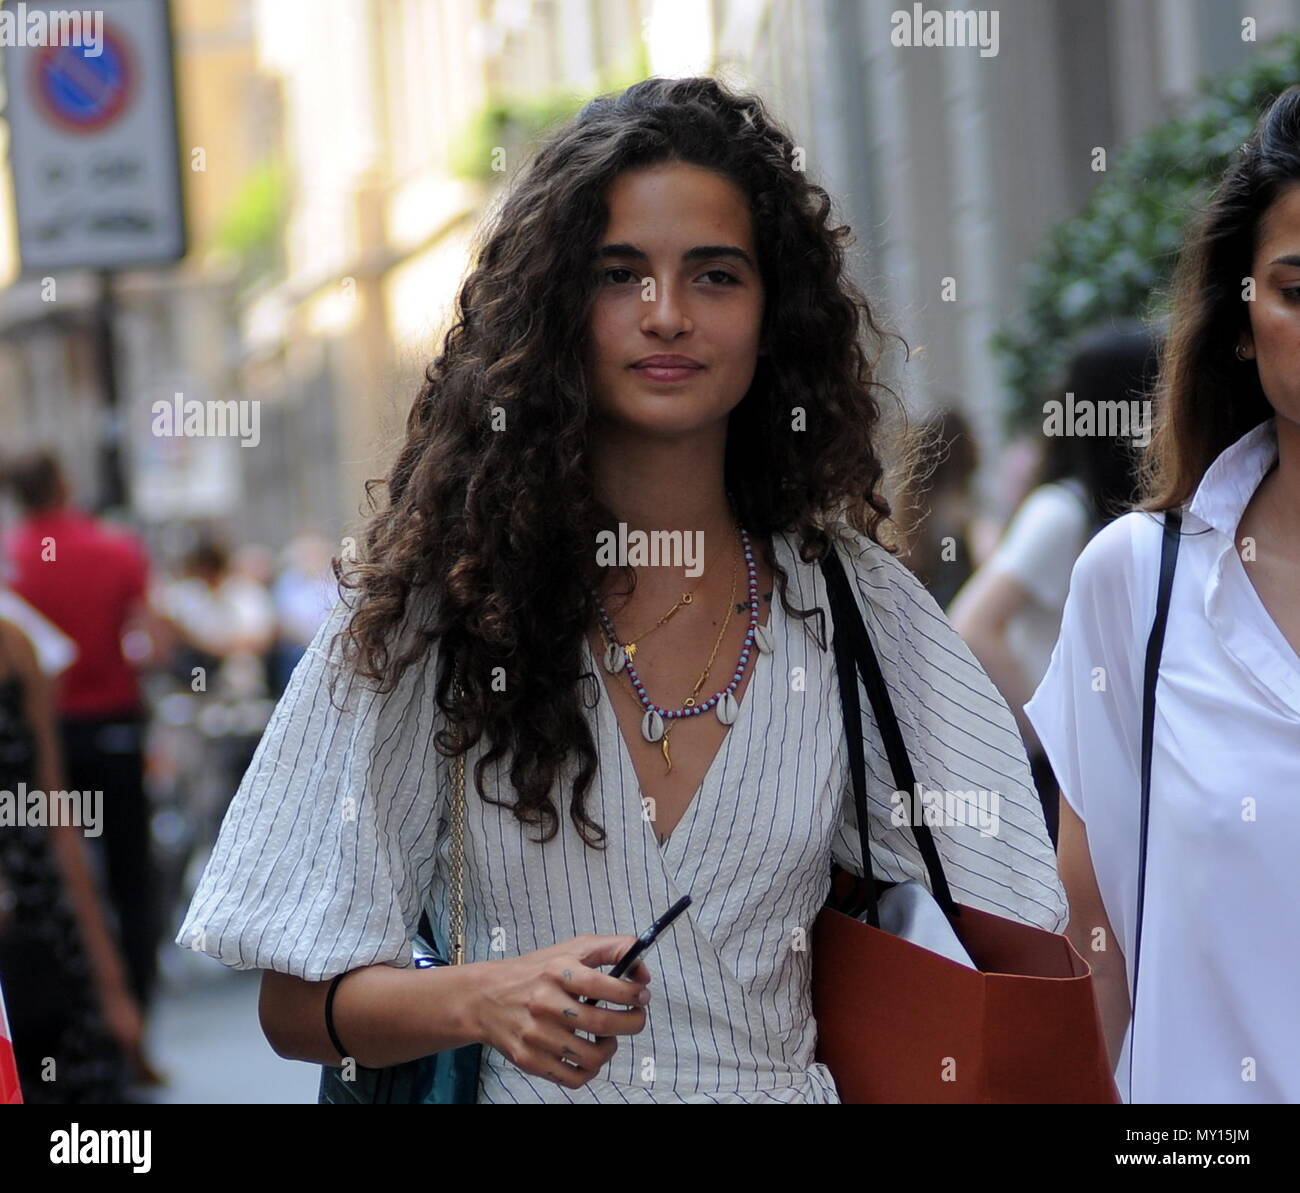 Milán, Chiara Scelsi paseos en el centro Chiara Scelsi, modelo favorito de  los estilistas Dolce & Gabbana, camina por las calles del centro con un  amigo. Después de ir de compras en